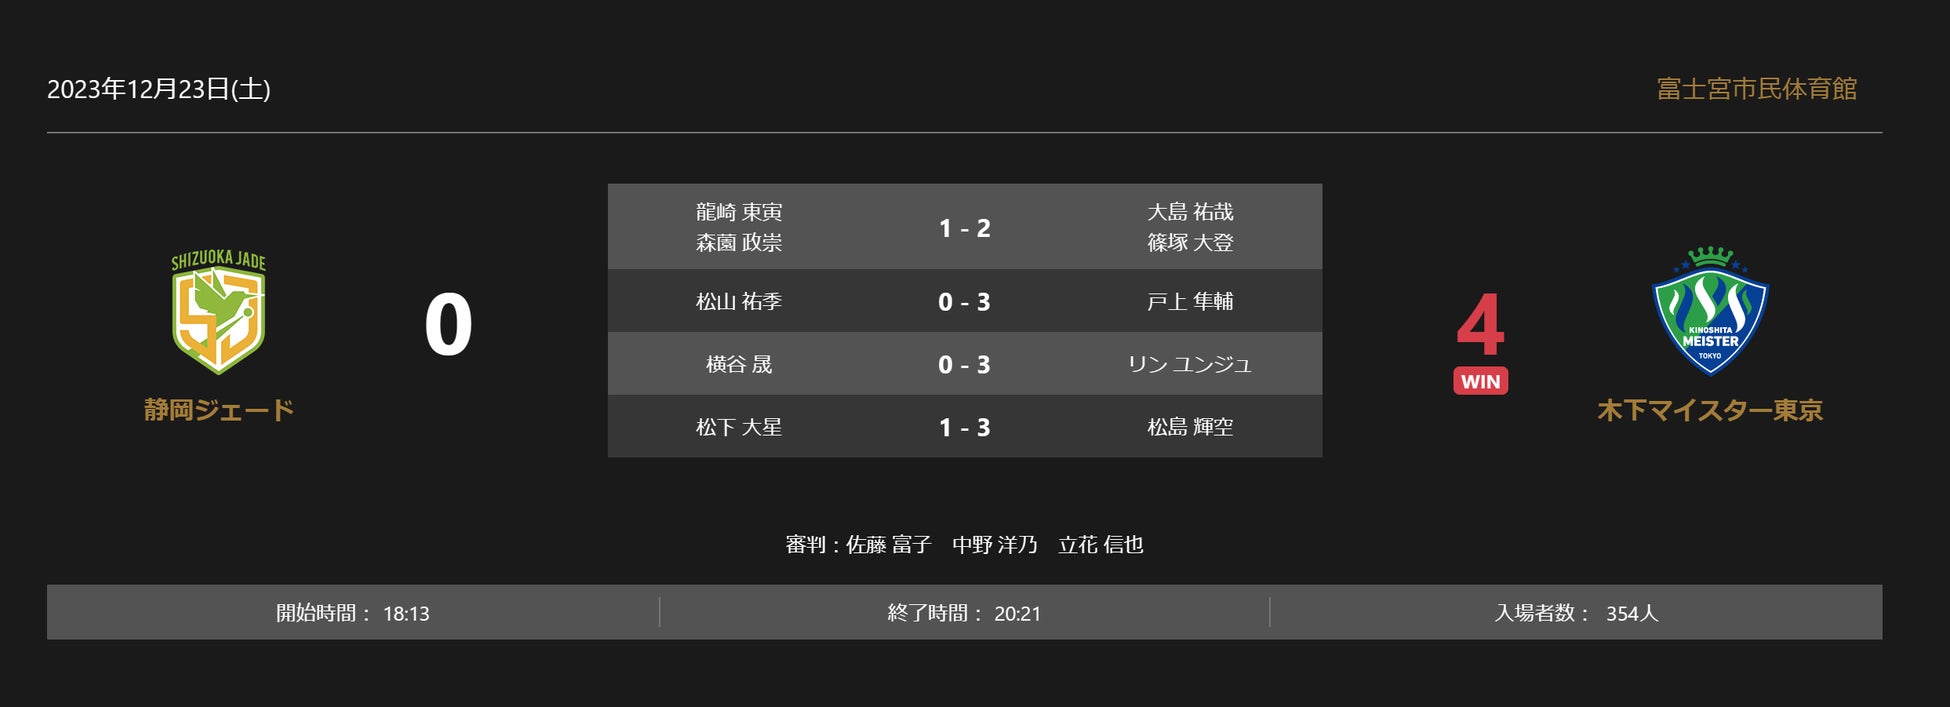 【バレー/Vリーグ】V1男子・世界3位にVリーグ昨季王者WD名古屋が勝利。V1女子・昨季決勝カードはNECが制す